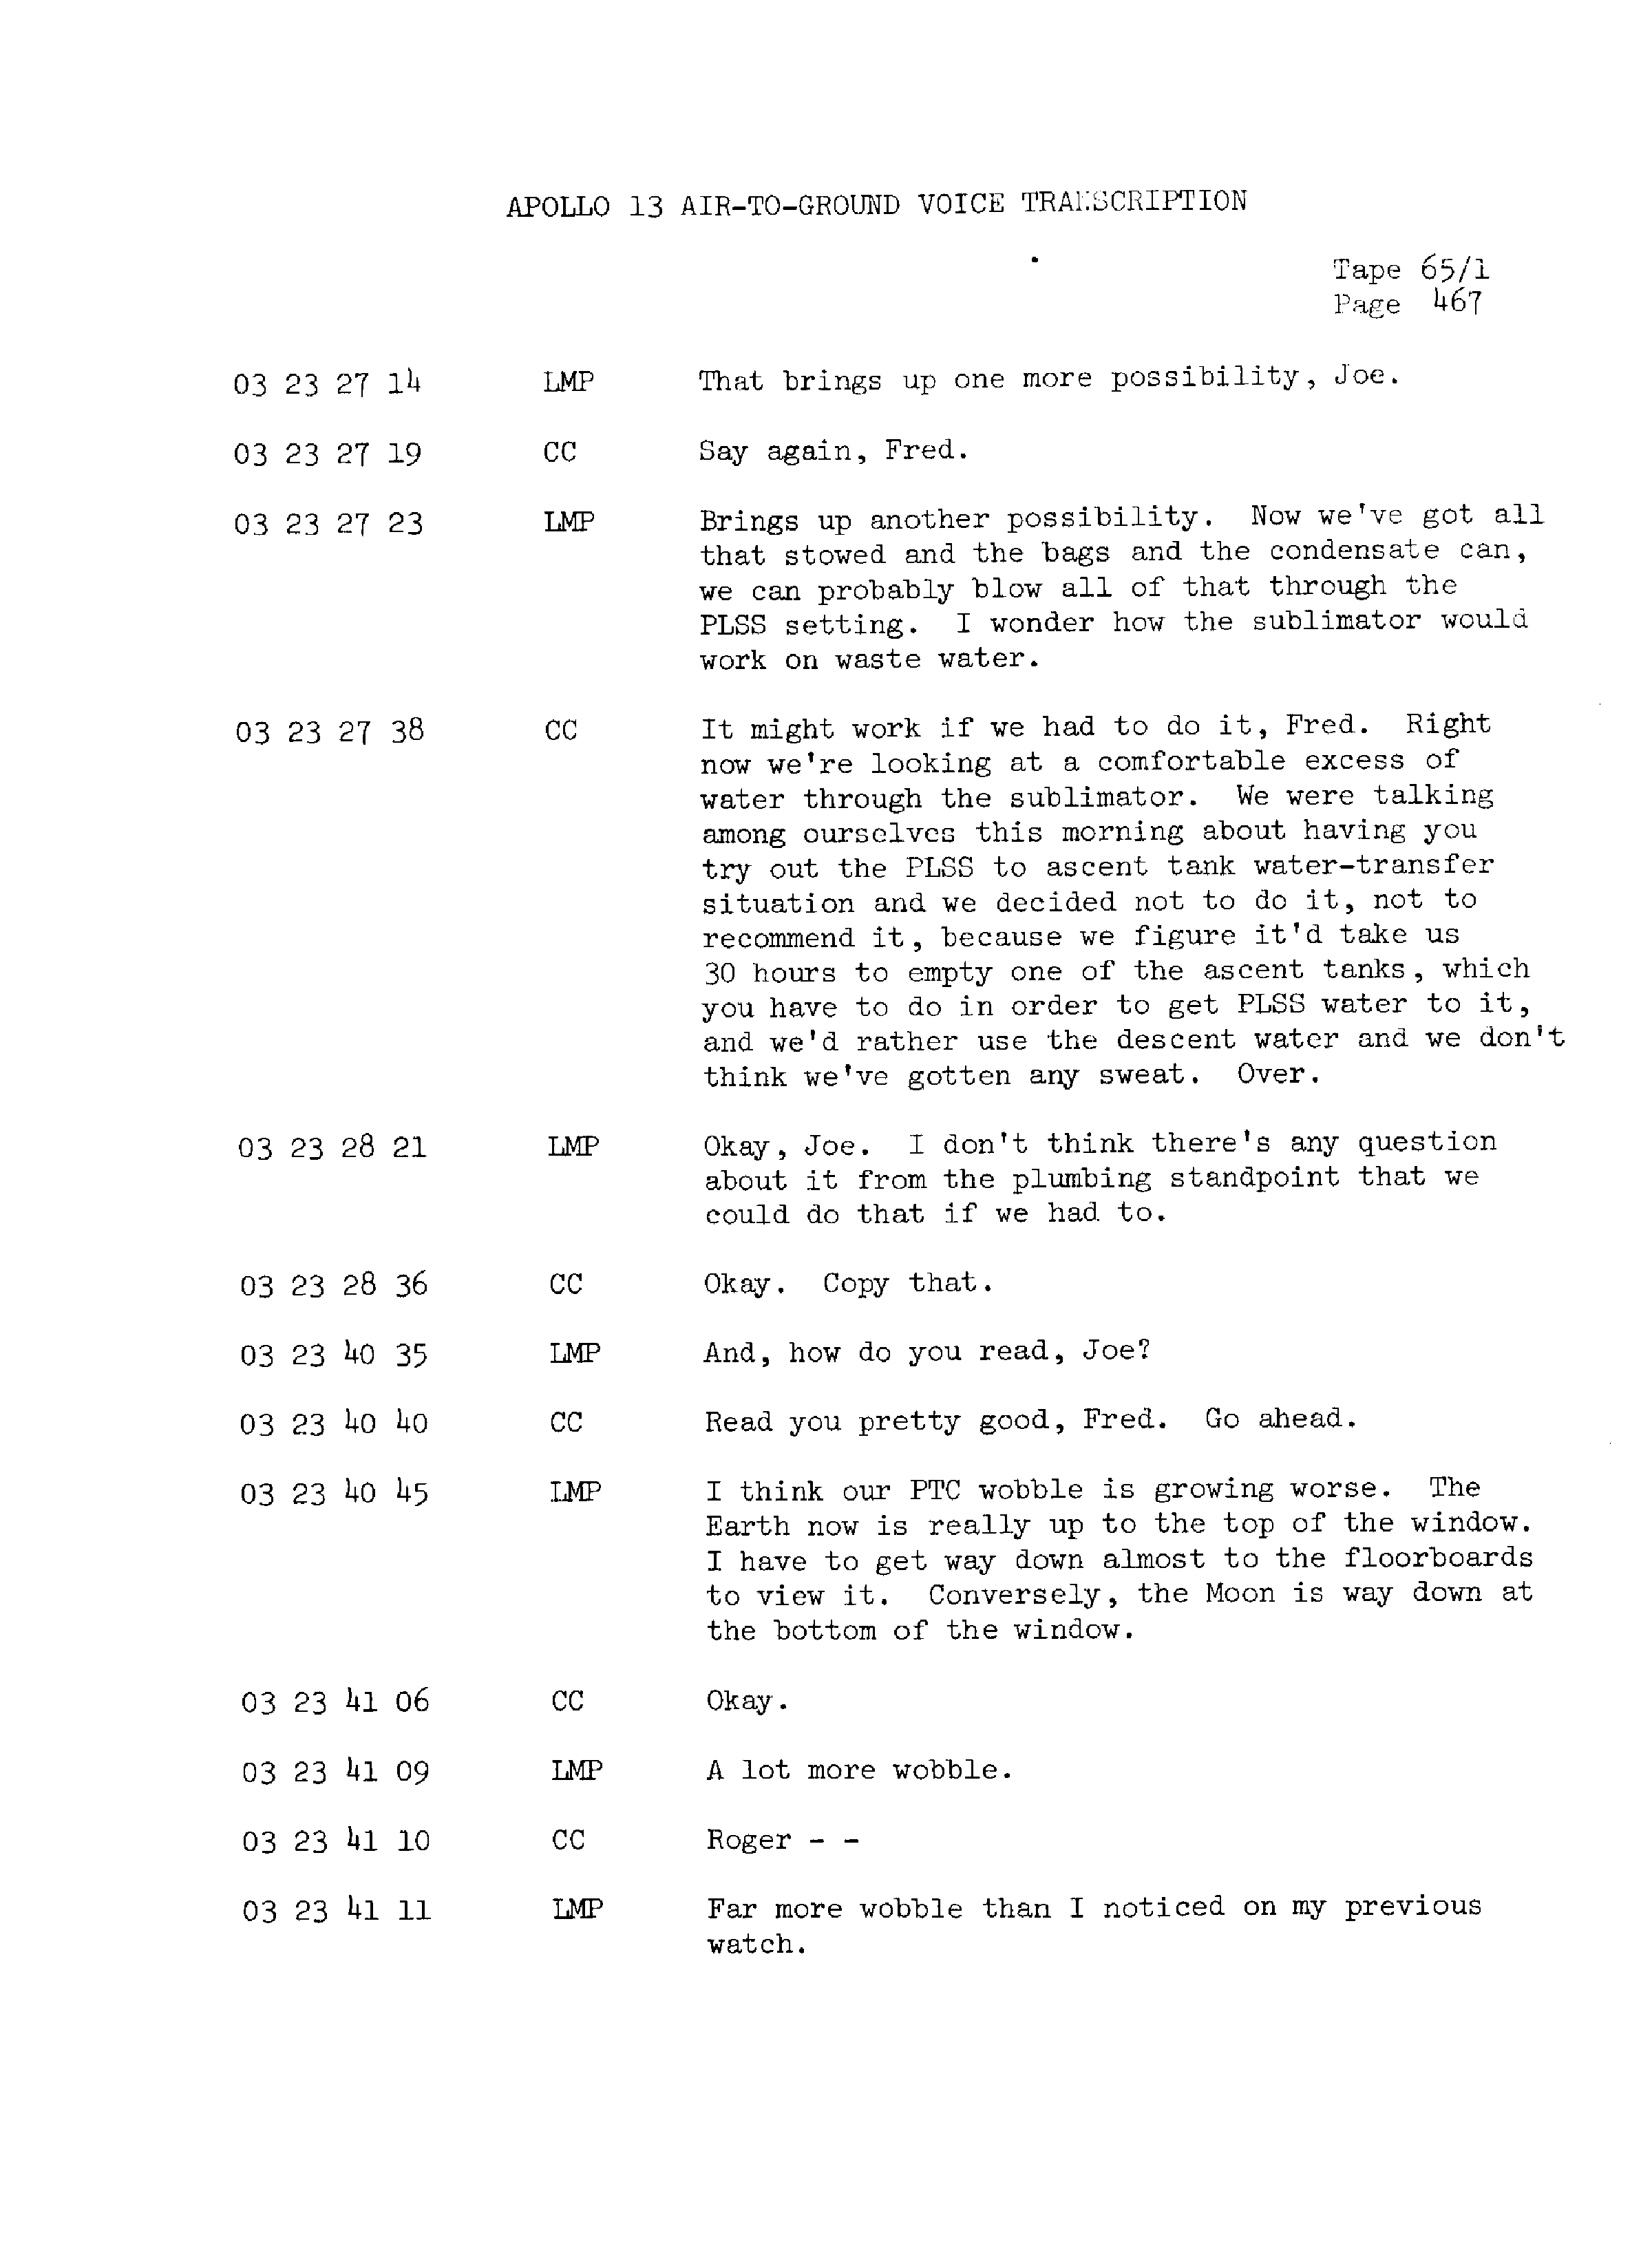 Page 474 of Apollo 13’s original transcript